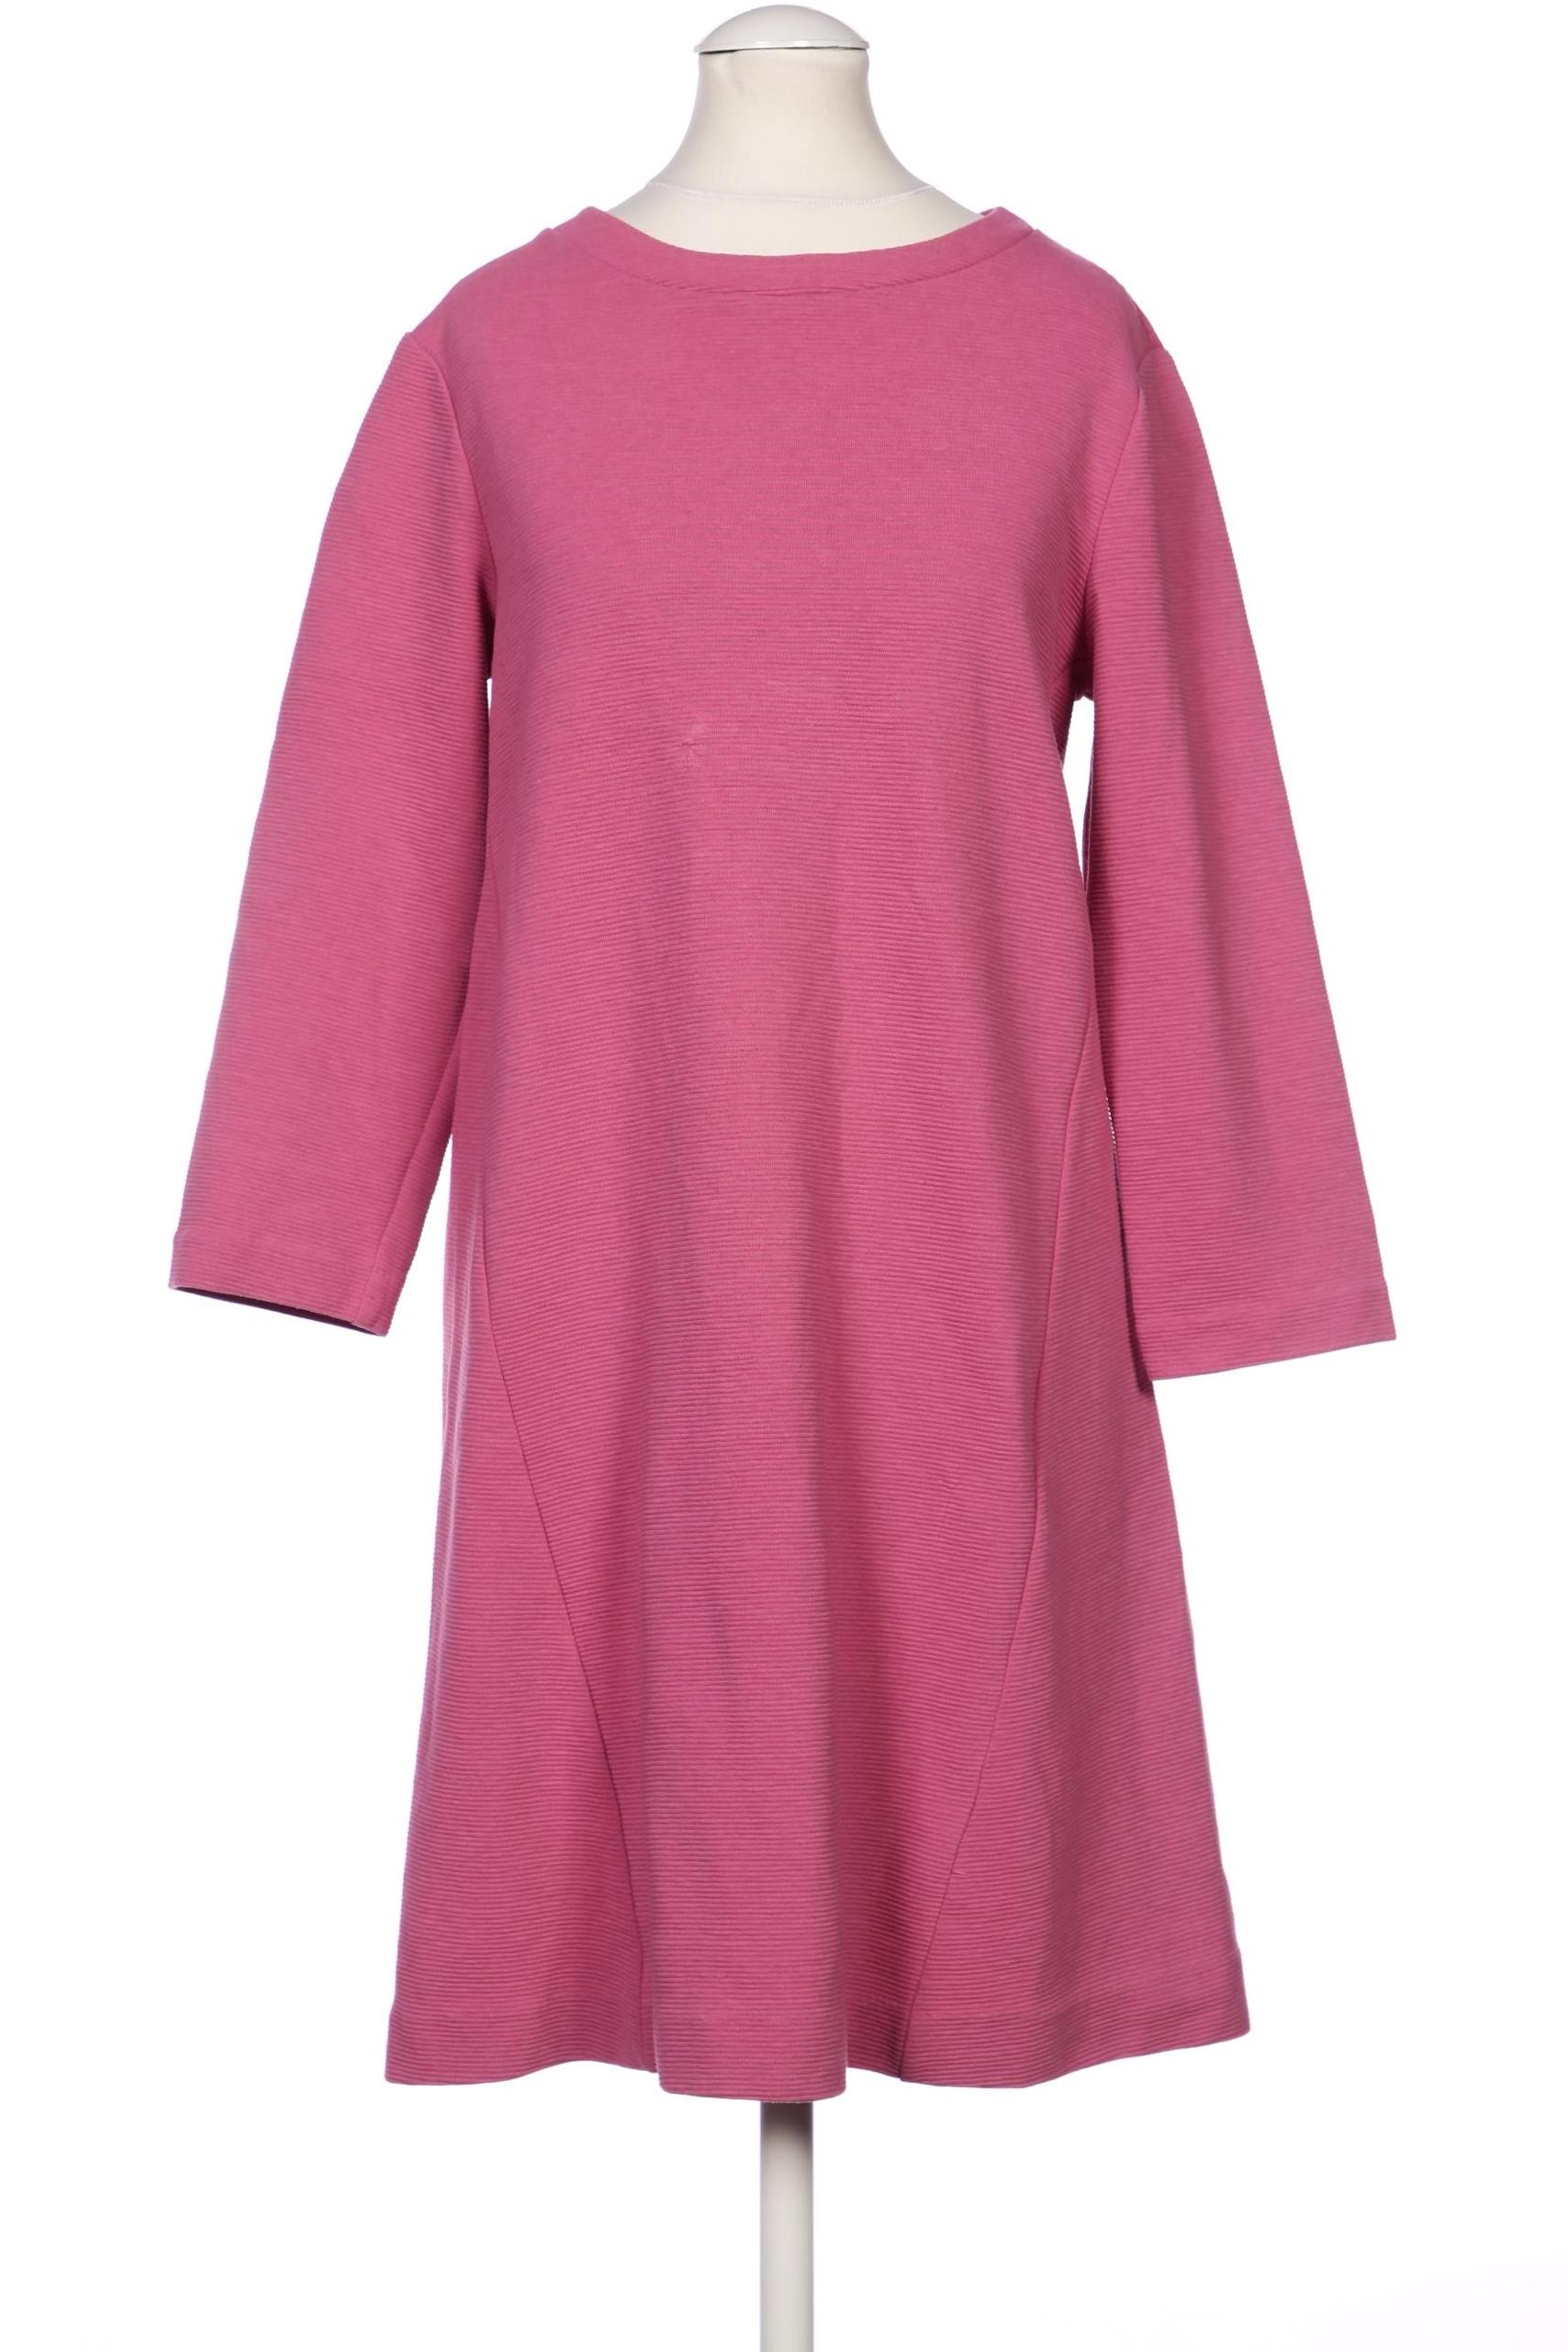 Boden Damen Kleid, pink, Gr. 34 von Boden